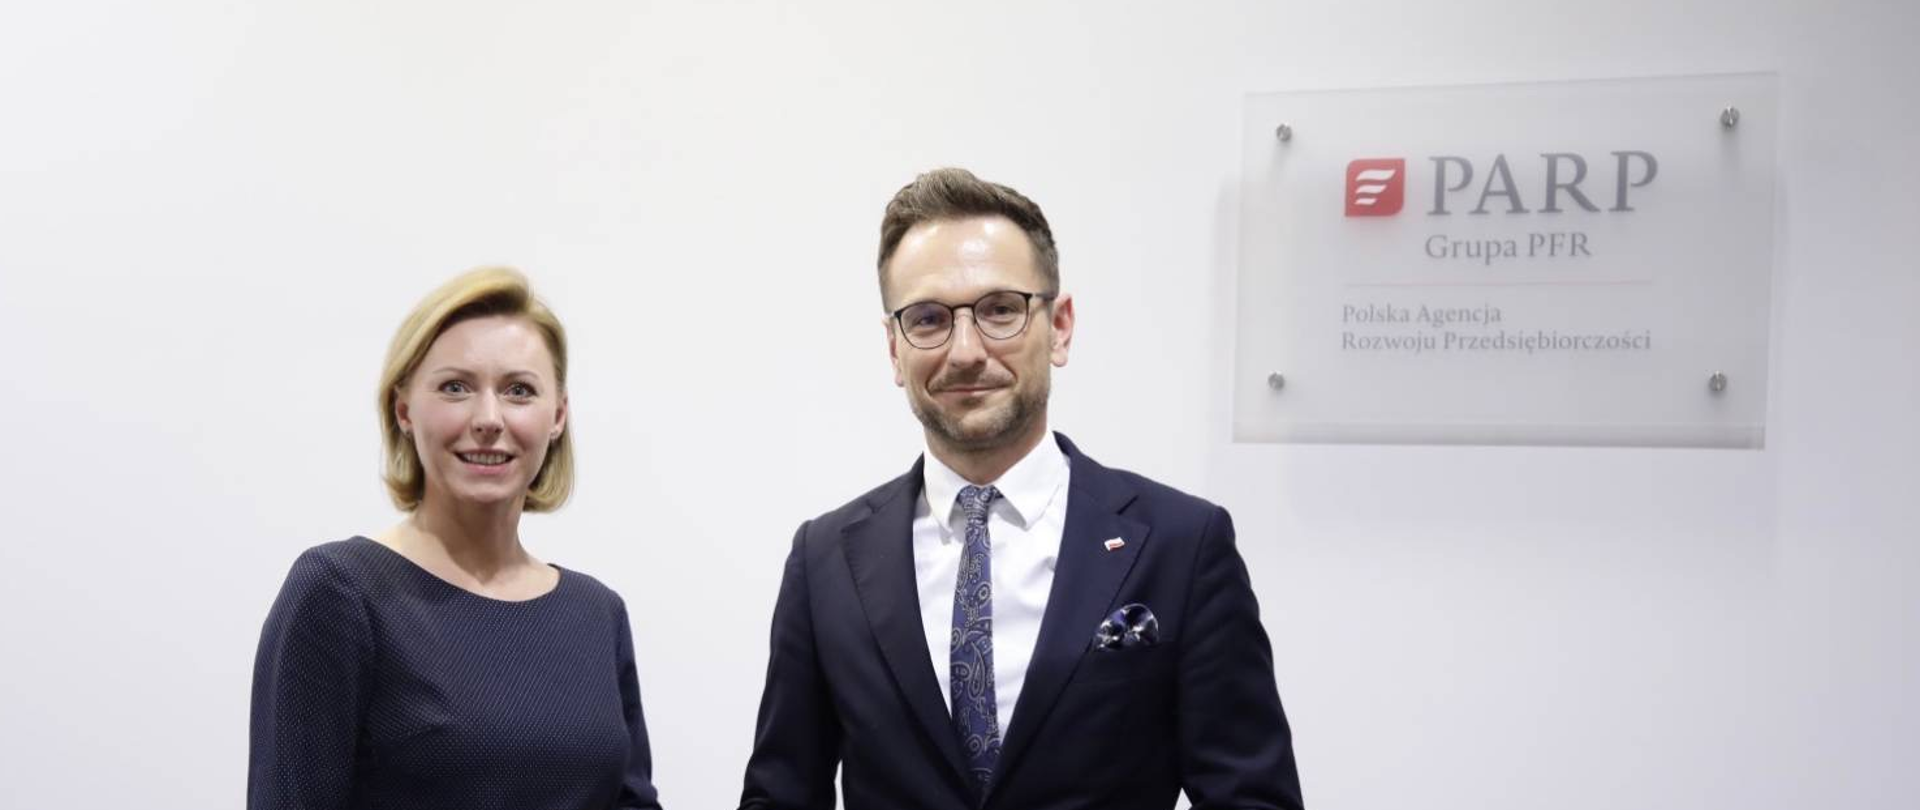 Na zdjęciu widoczne sylwetki ministra Waldemara Budy oraz prezes PARP Poznań Magdaleny Hilszer, obok logo PARP.